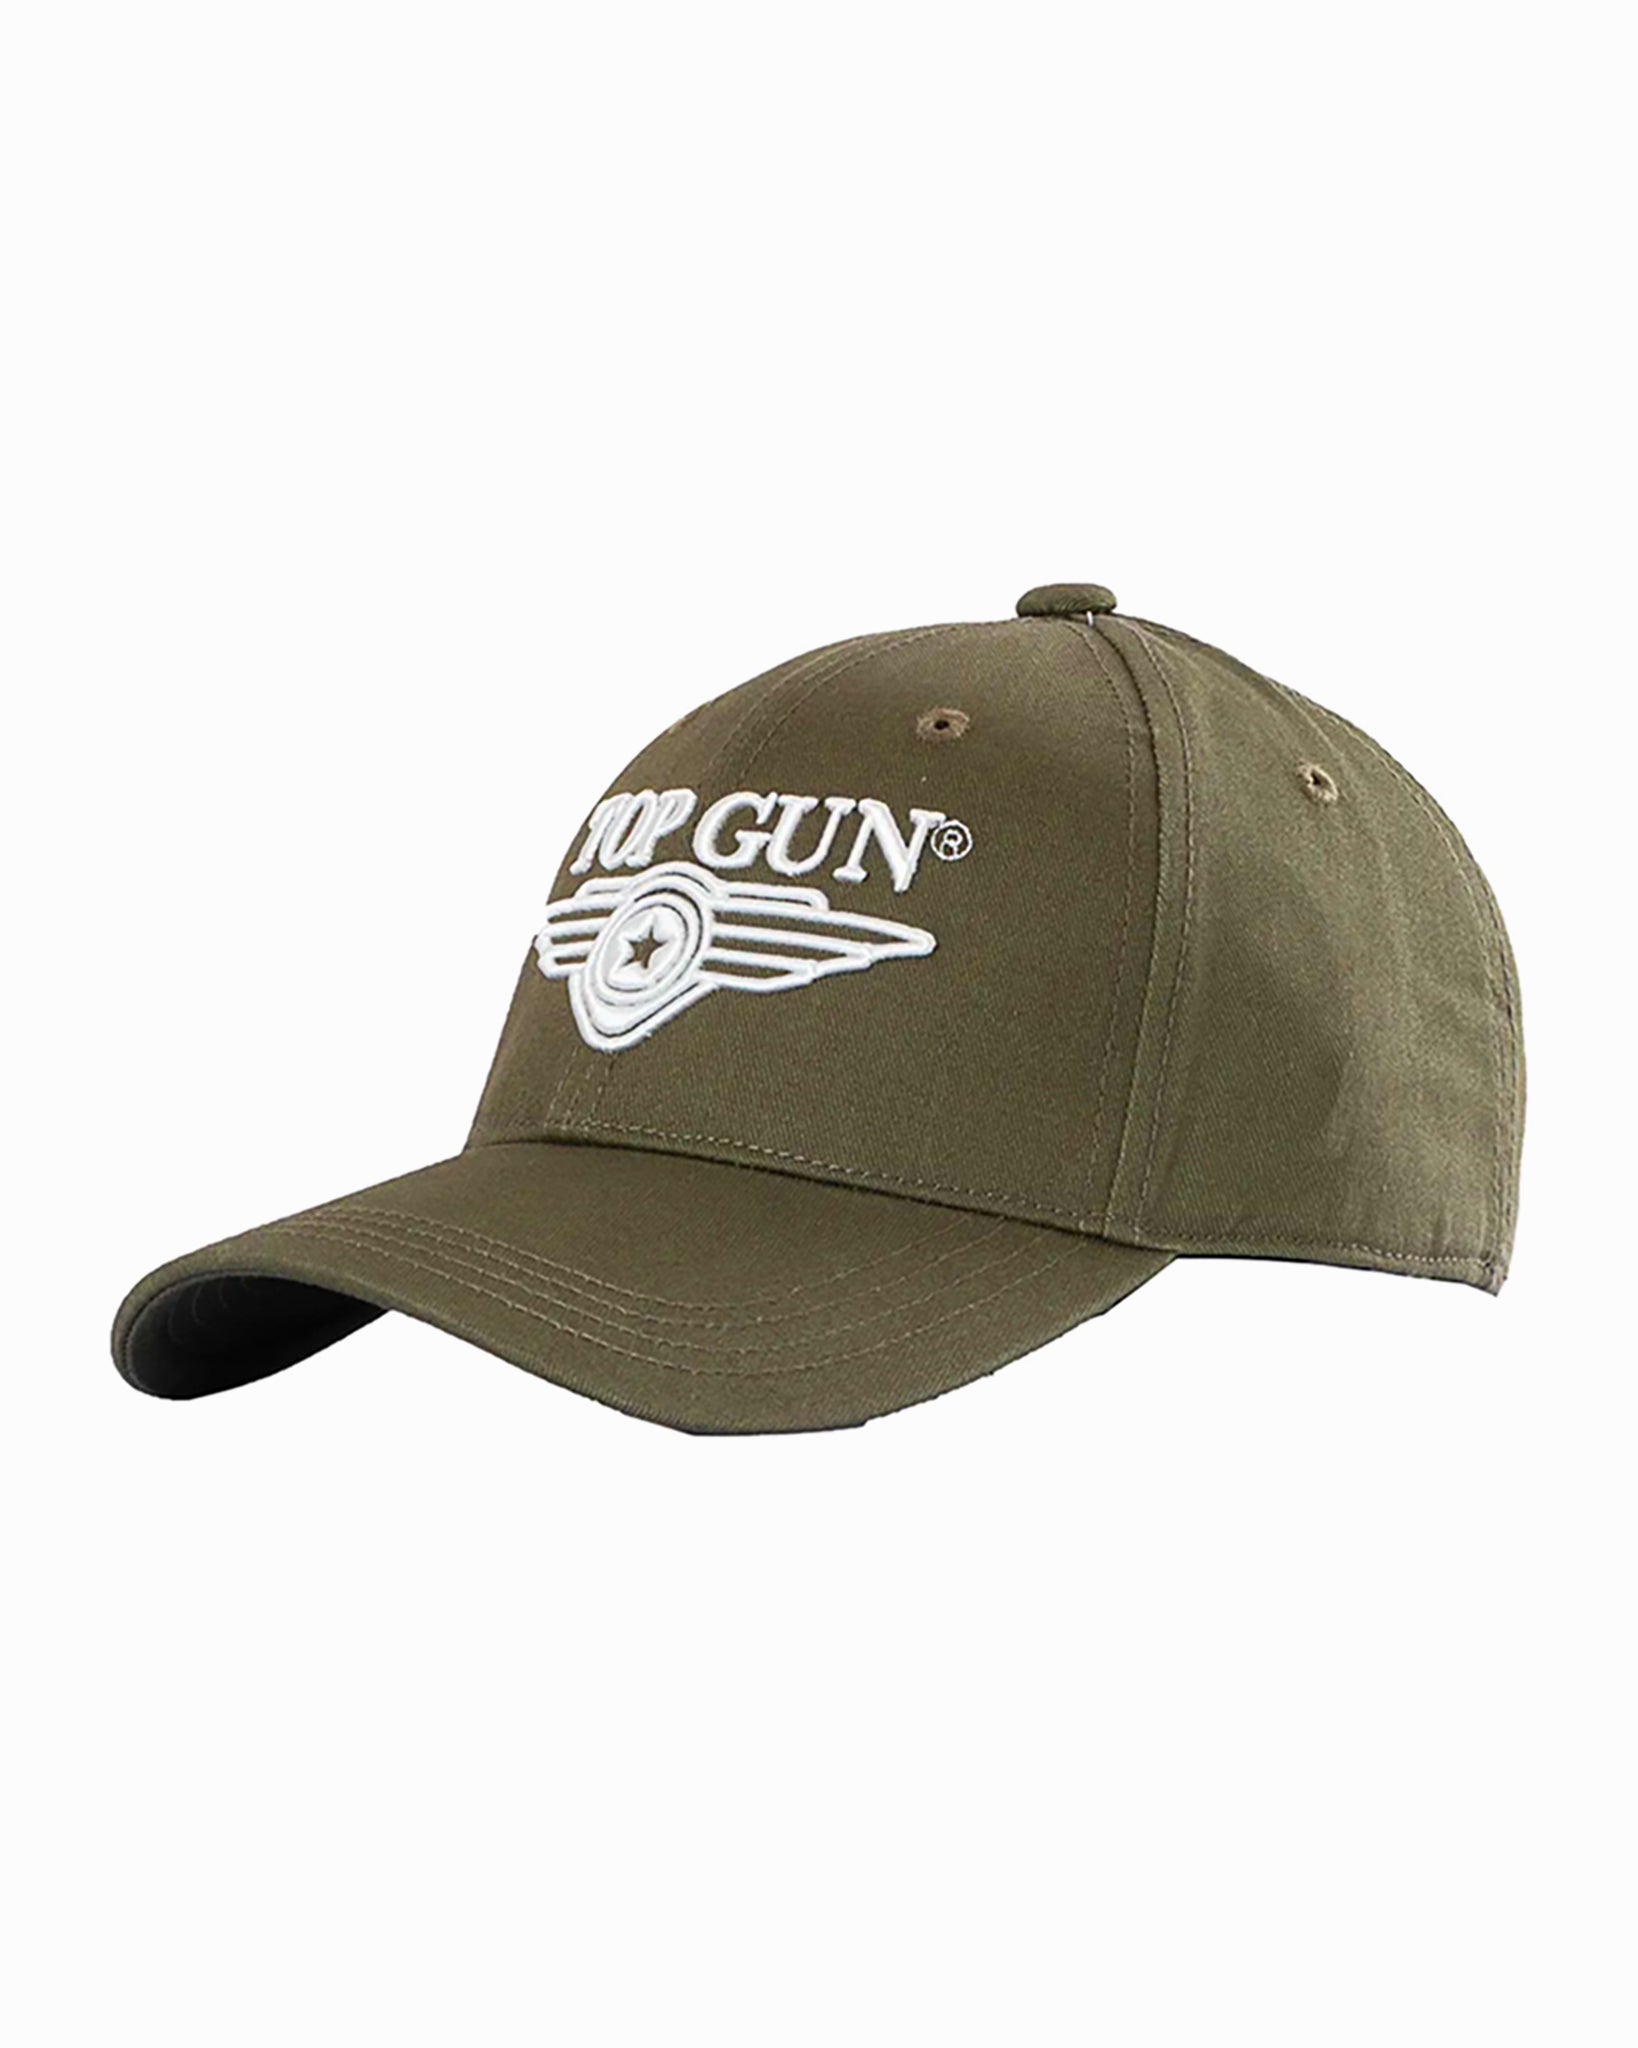 TOP GUN® 3D Gun Store Top WINGS LOGO – CAP